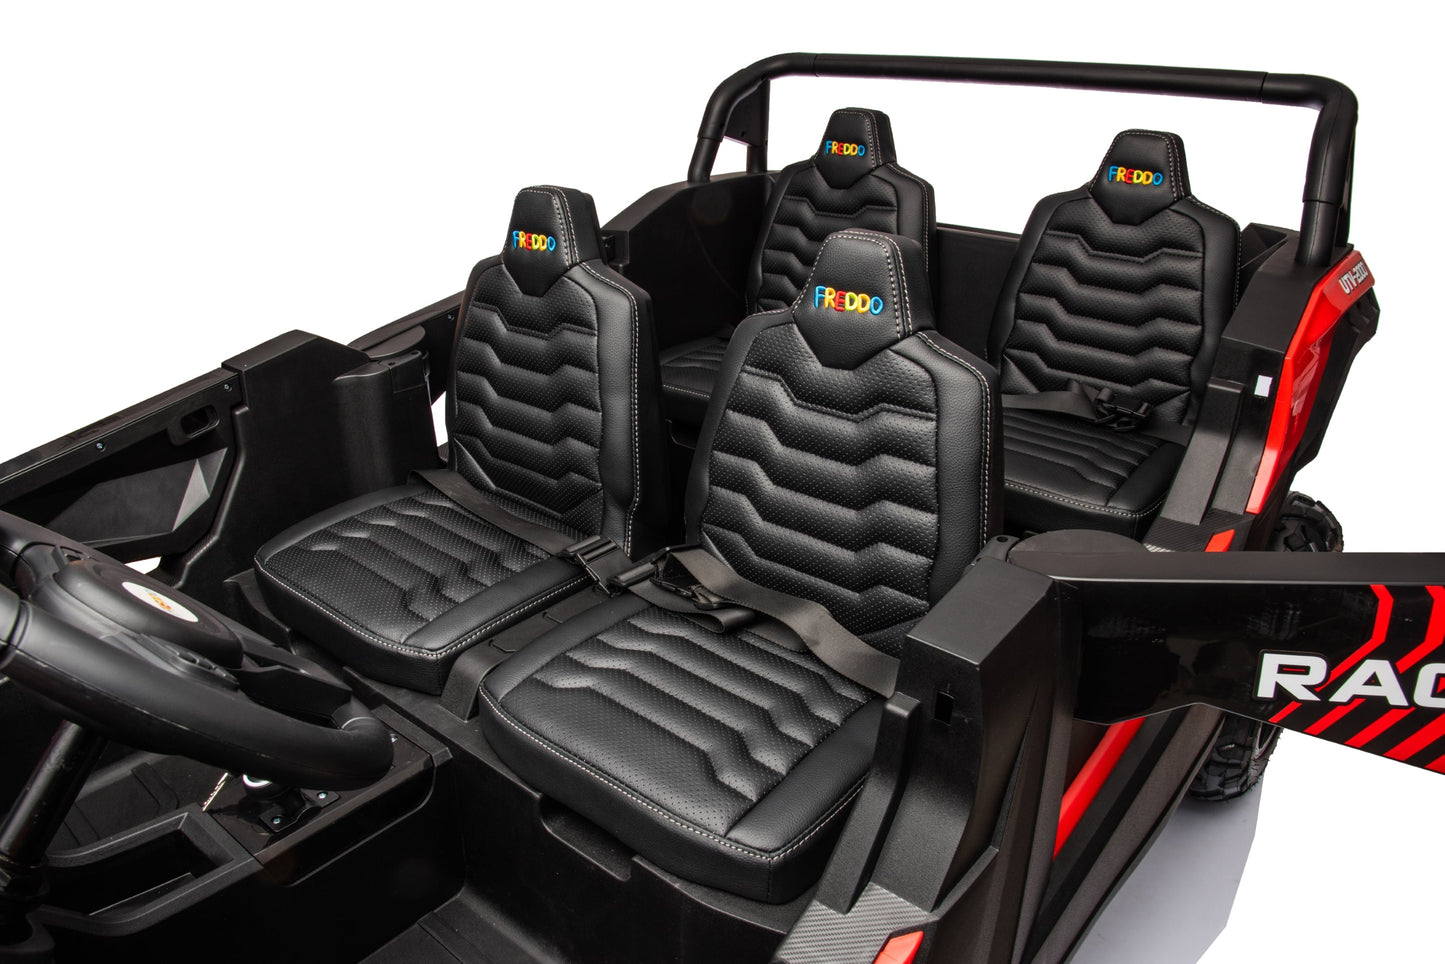 48V Freddo Beast XL Dune Buggy 4 Seater Ride on for Kids